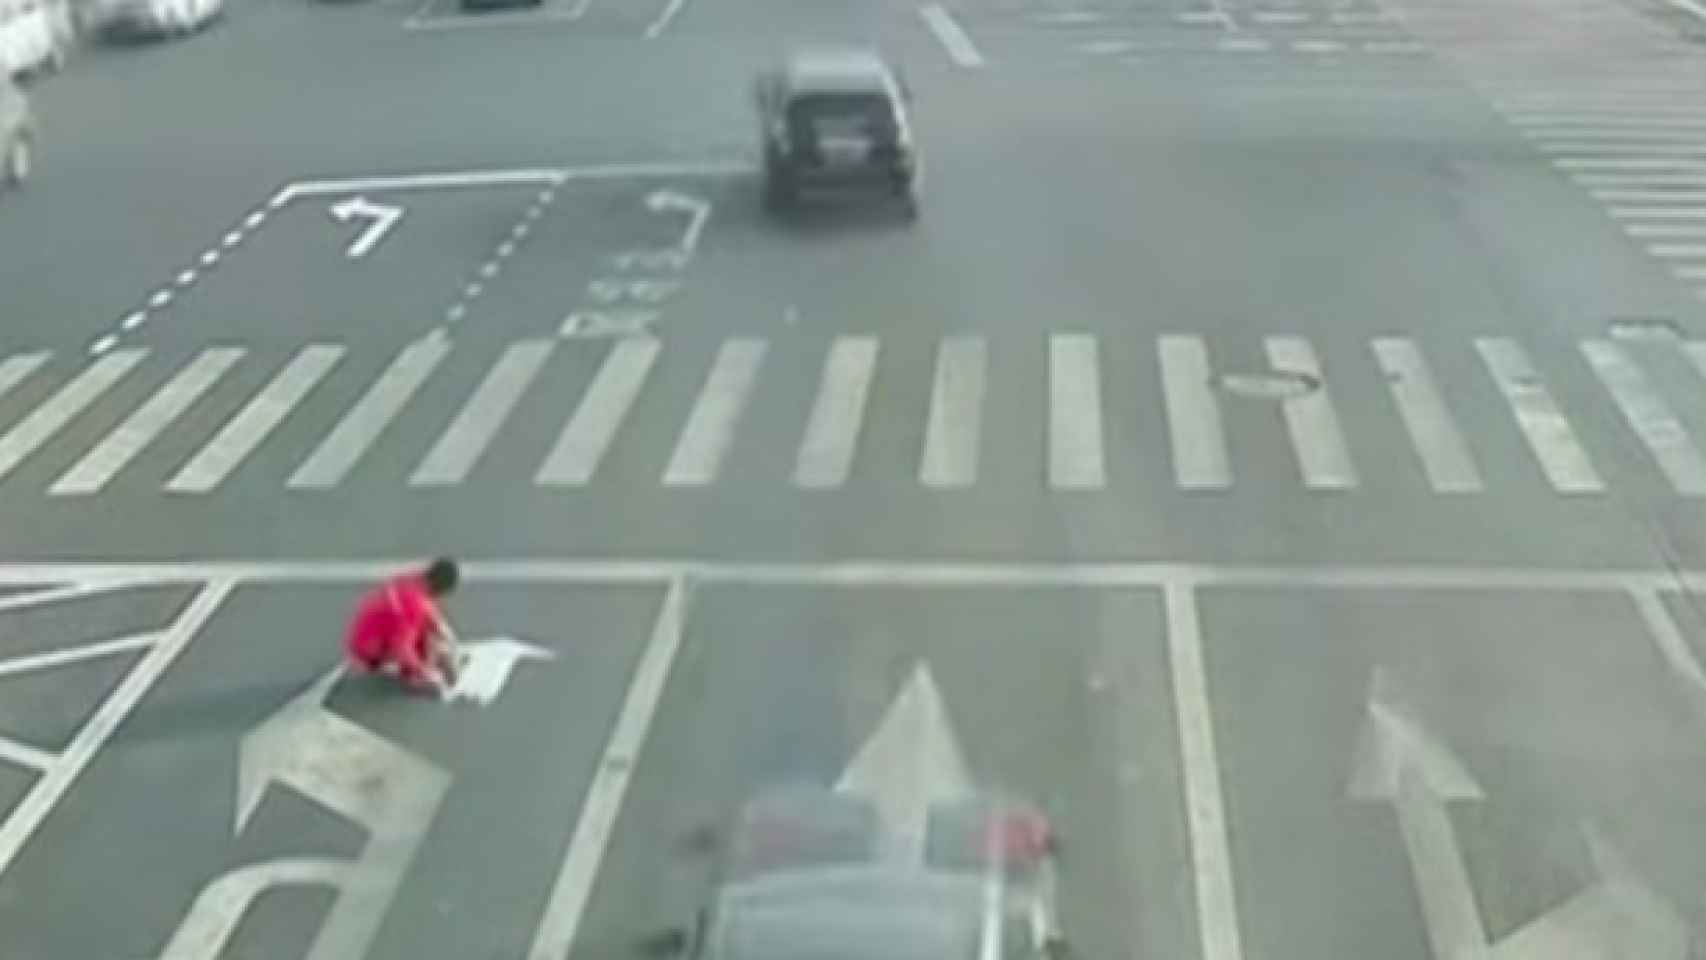 Un hombre chino pinta sus propias señales de tráfico sobre la calzada / CG